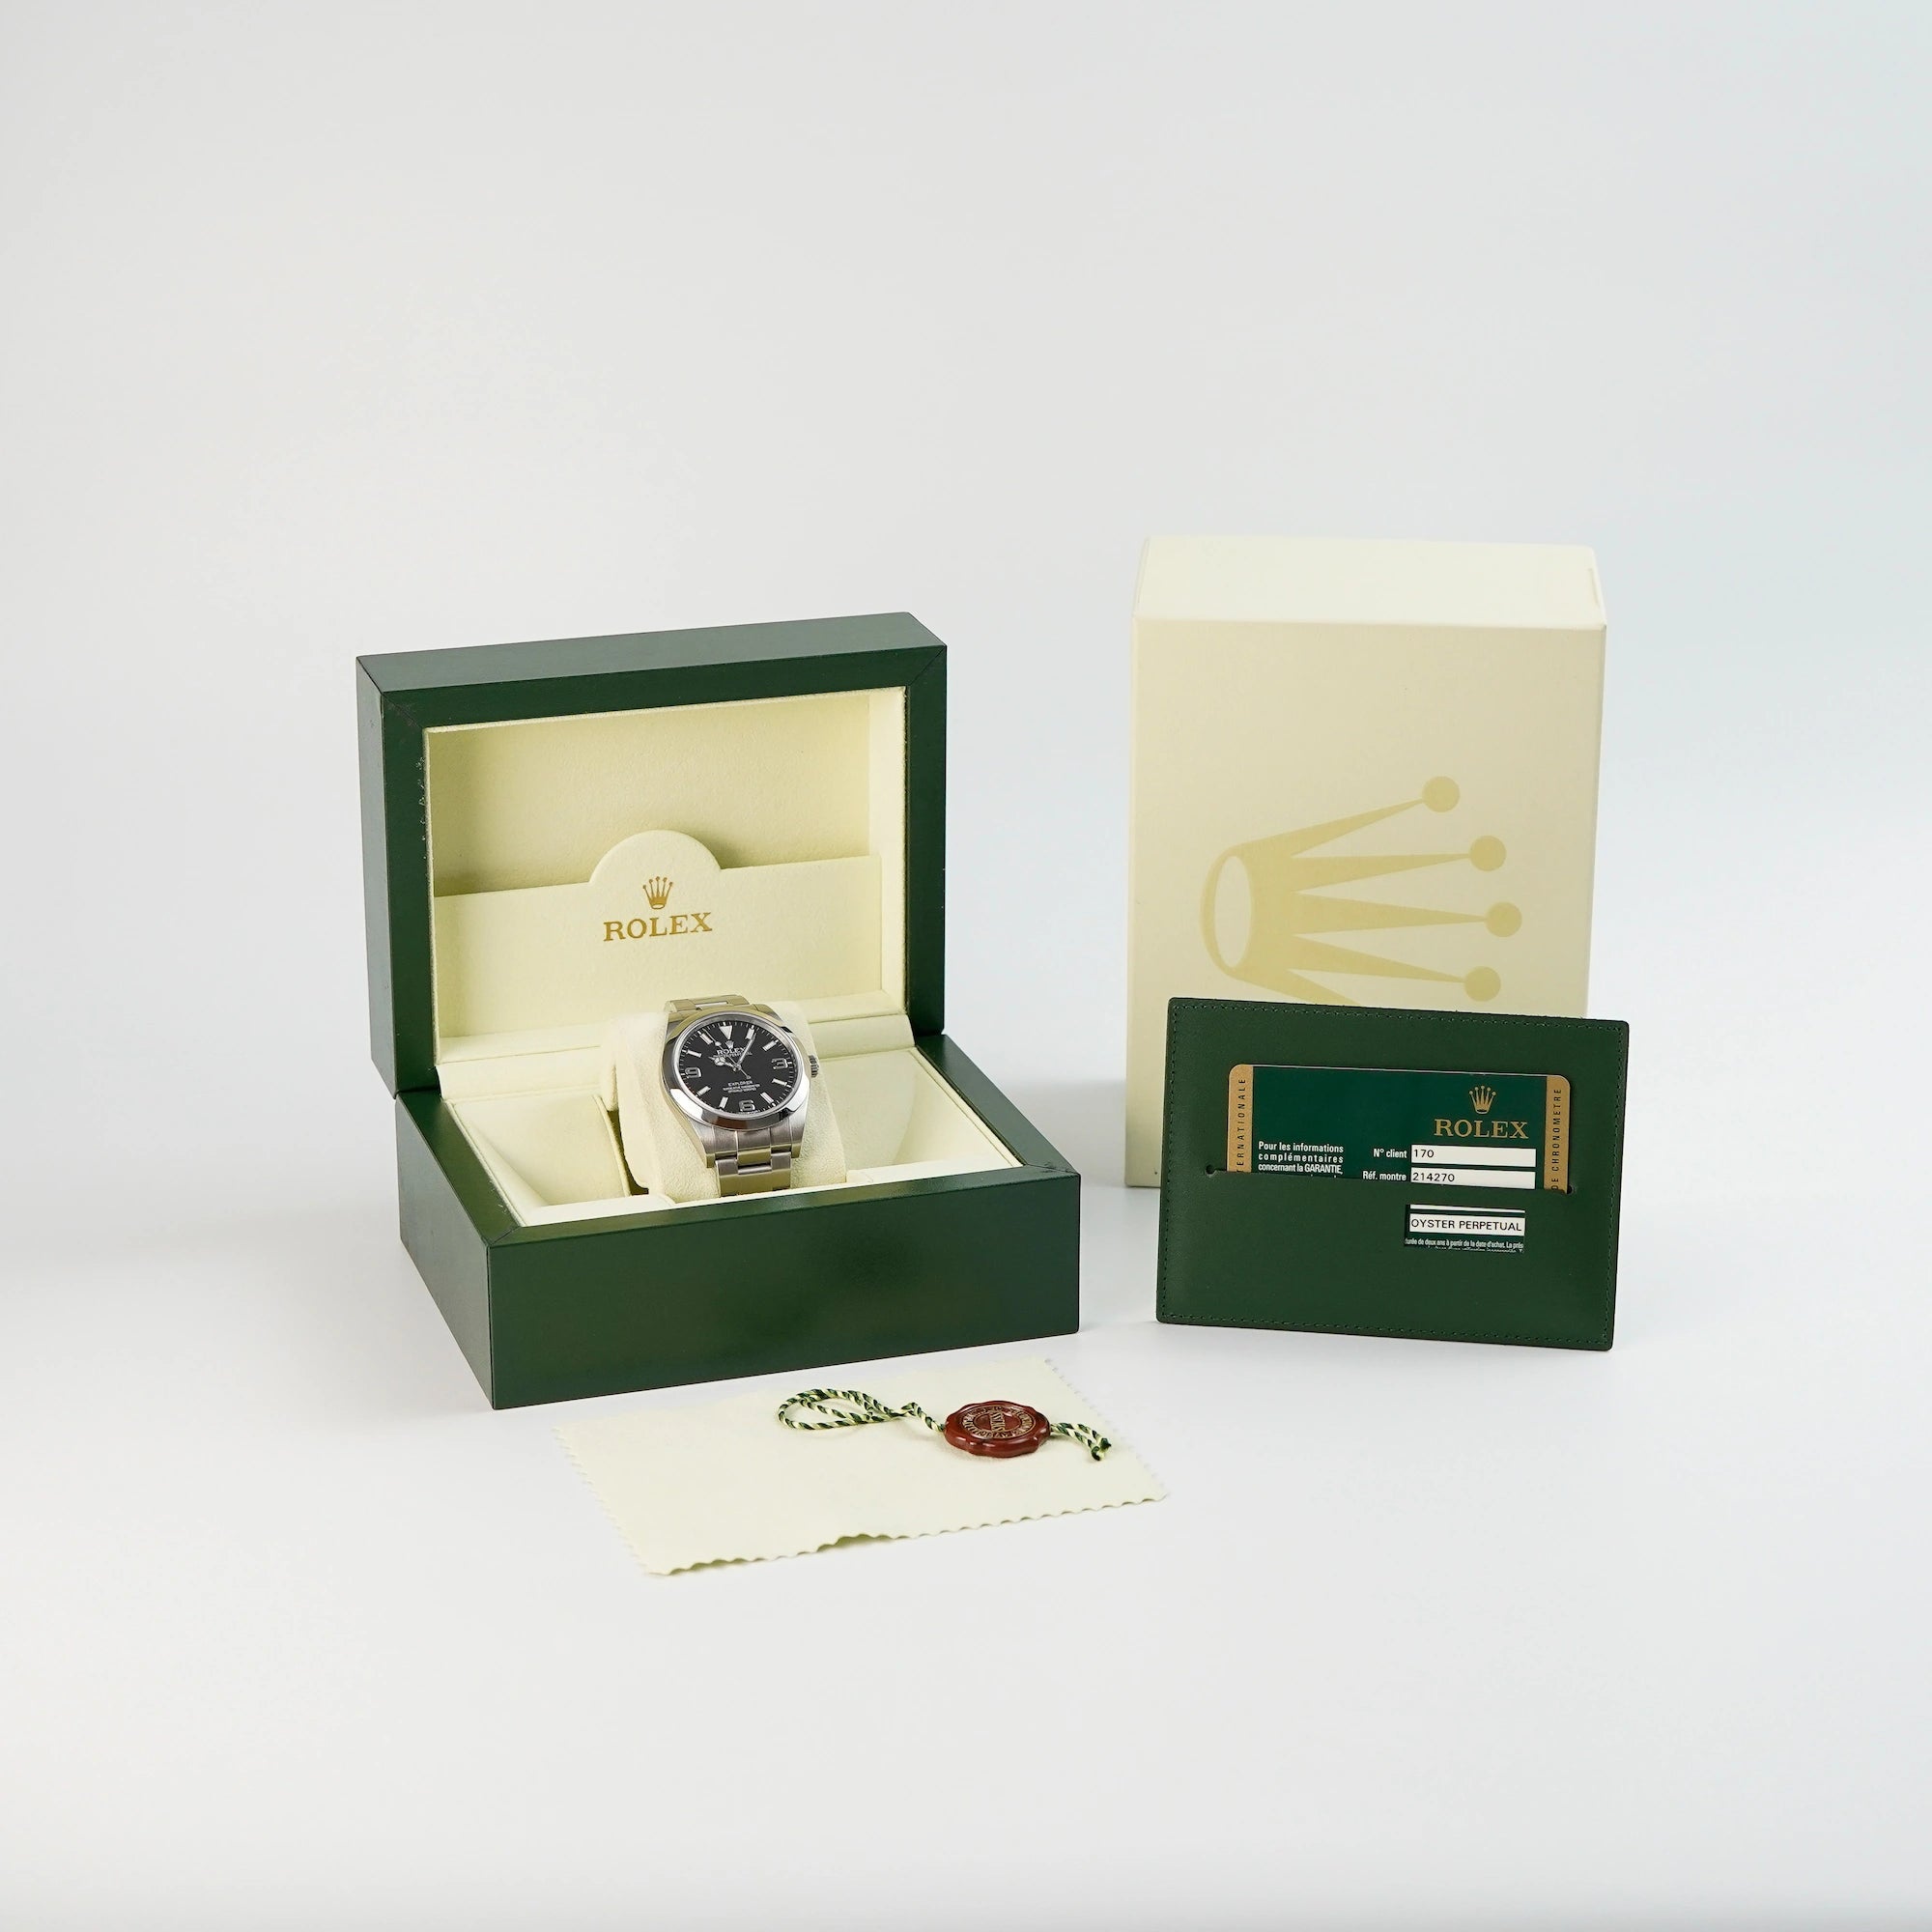 Kompletter Lieferumfang Rolex Explorer 1 mit dem 39mm Gehäuse und dem klassischen schwarzen Zifferblatt mit Box, Papieren und Hangtags